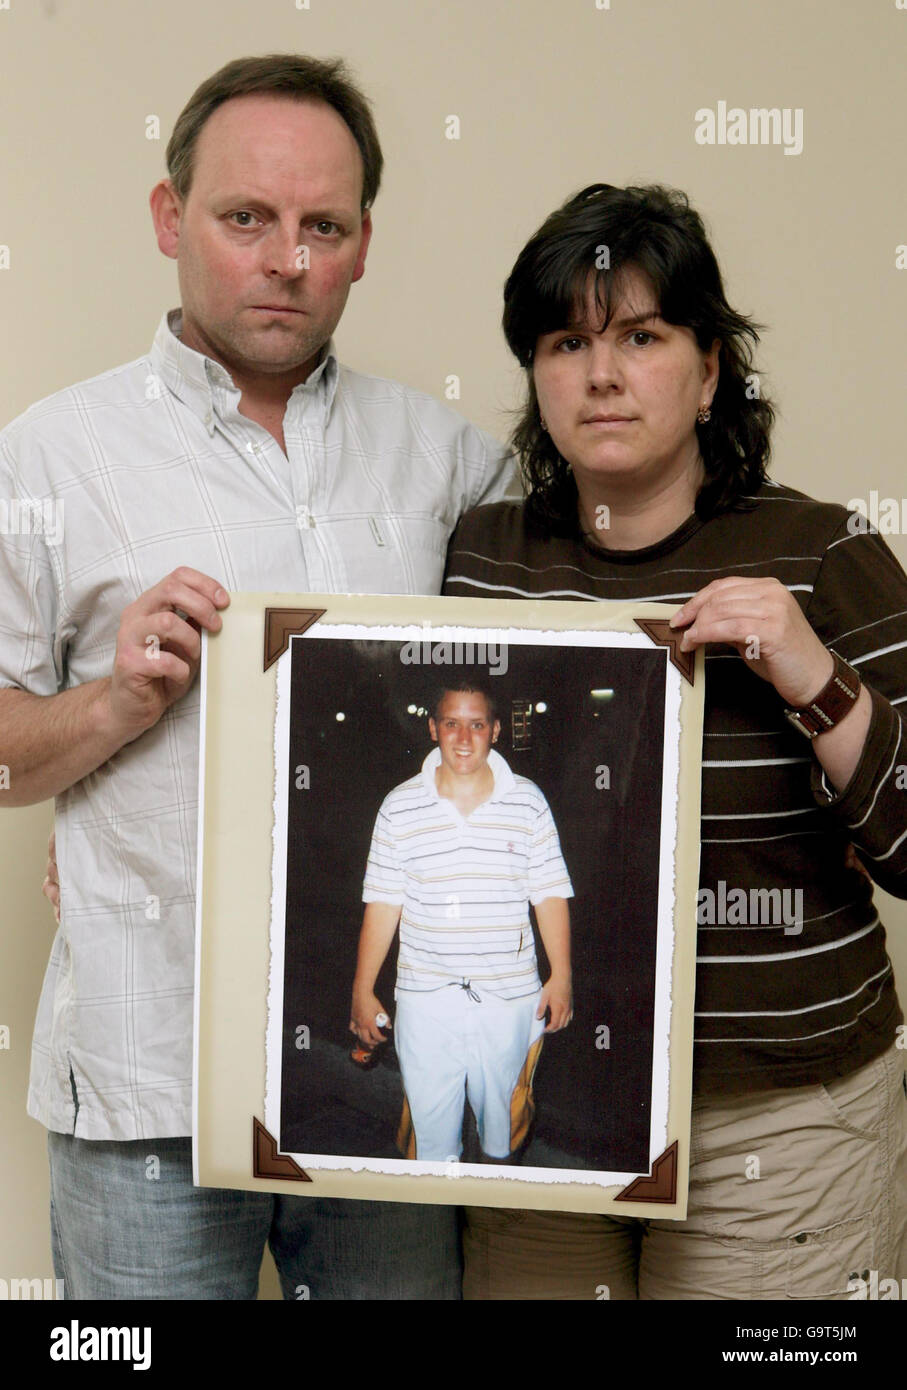 De gauche à droite, Kris et Elenar Chlebko de Chipping Sodbury, Gloucestershire, ont une photo de leur fils Nick qui a été tué par un chauffeur ivre en décembre 2006. Banque D'Images